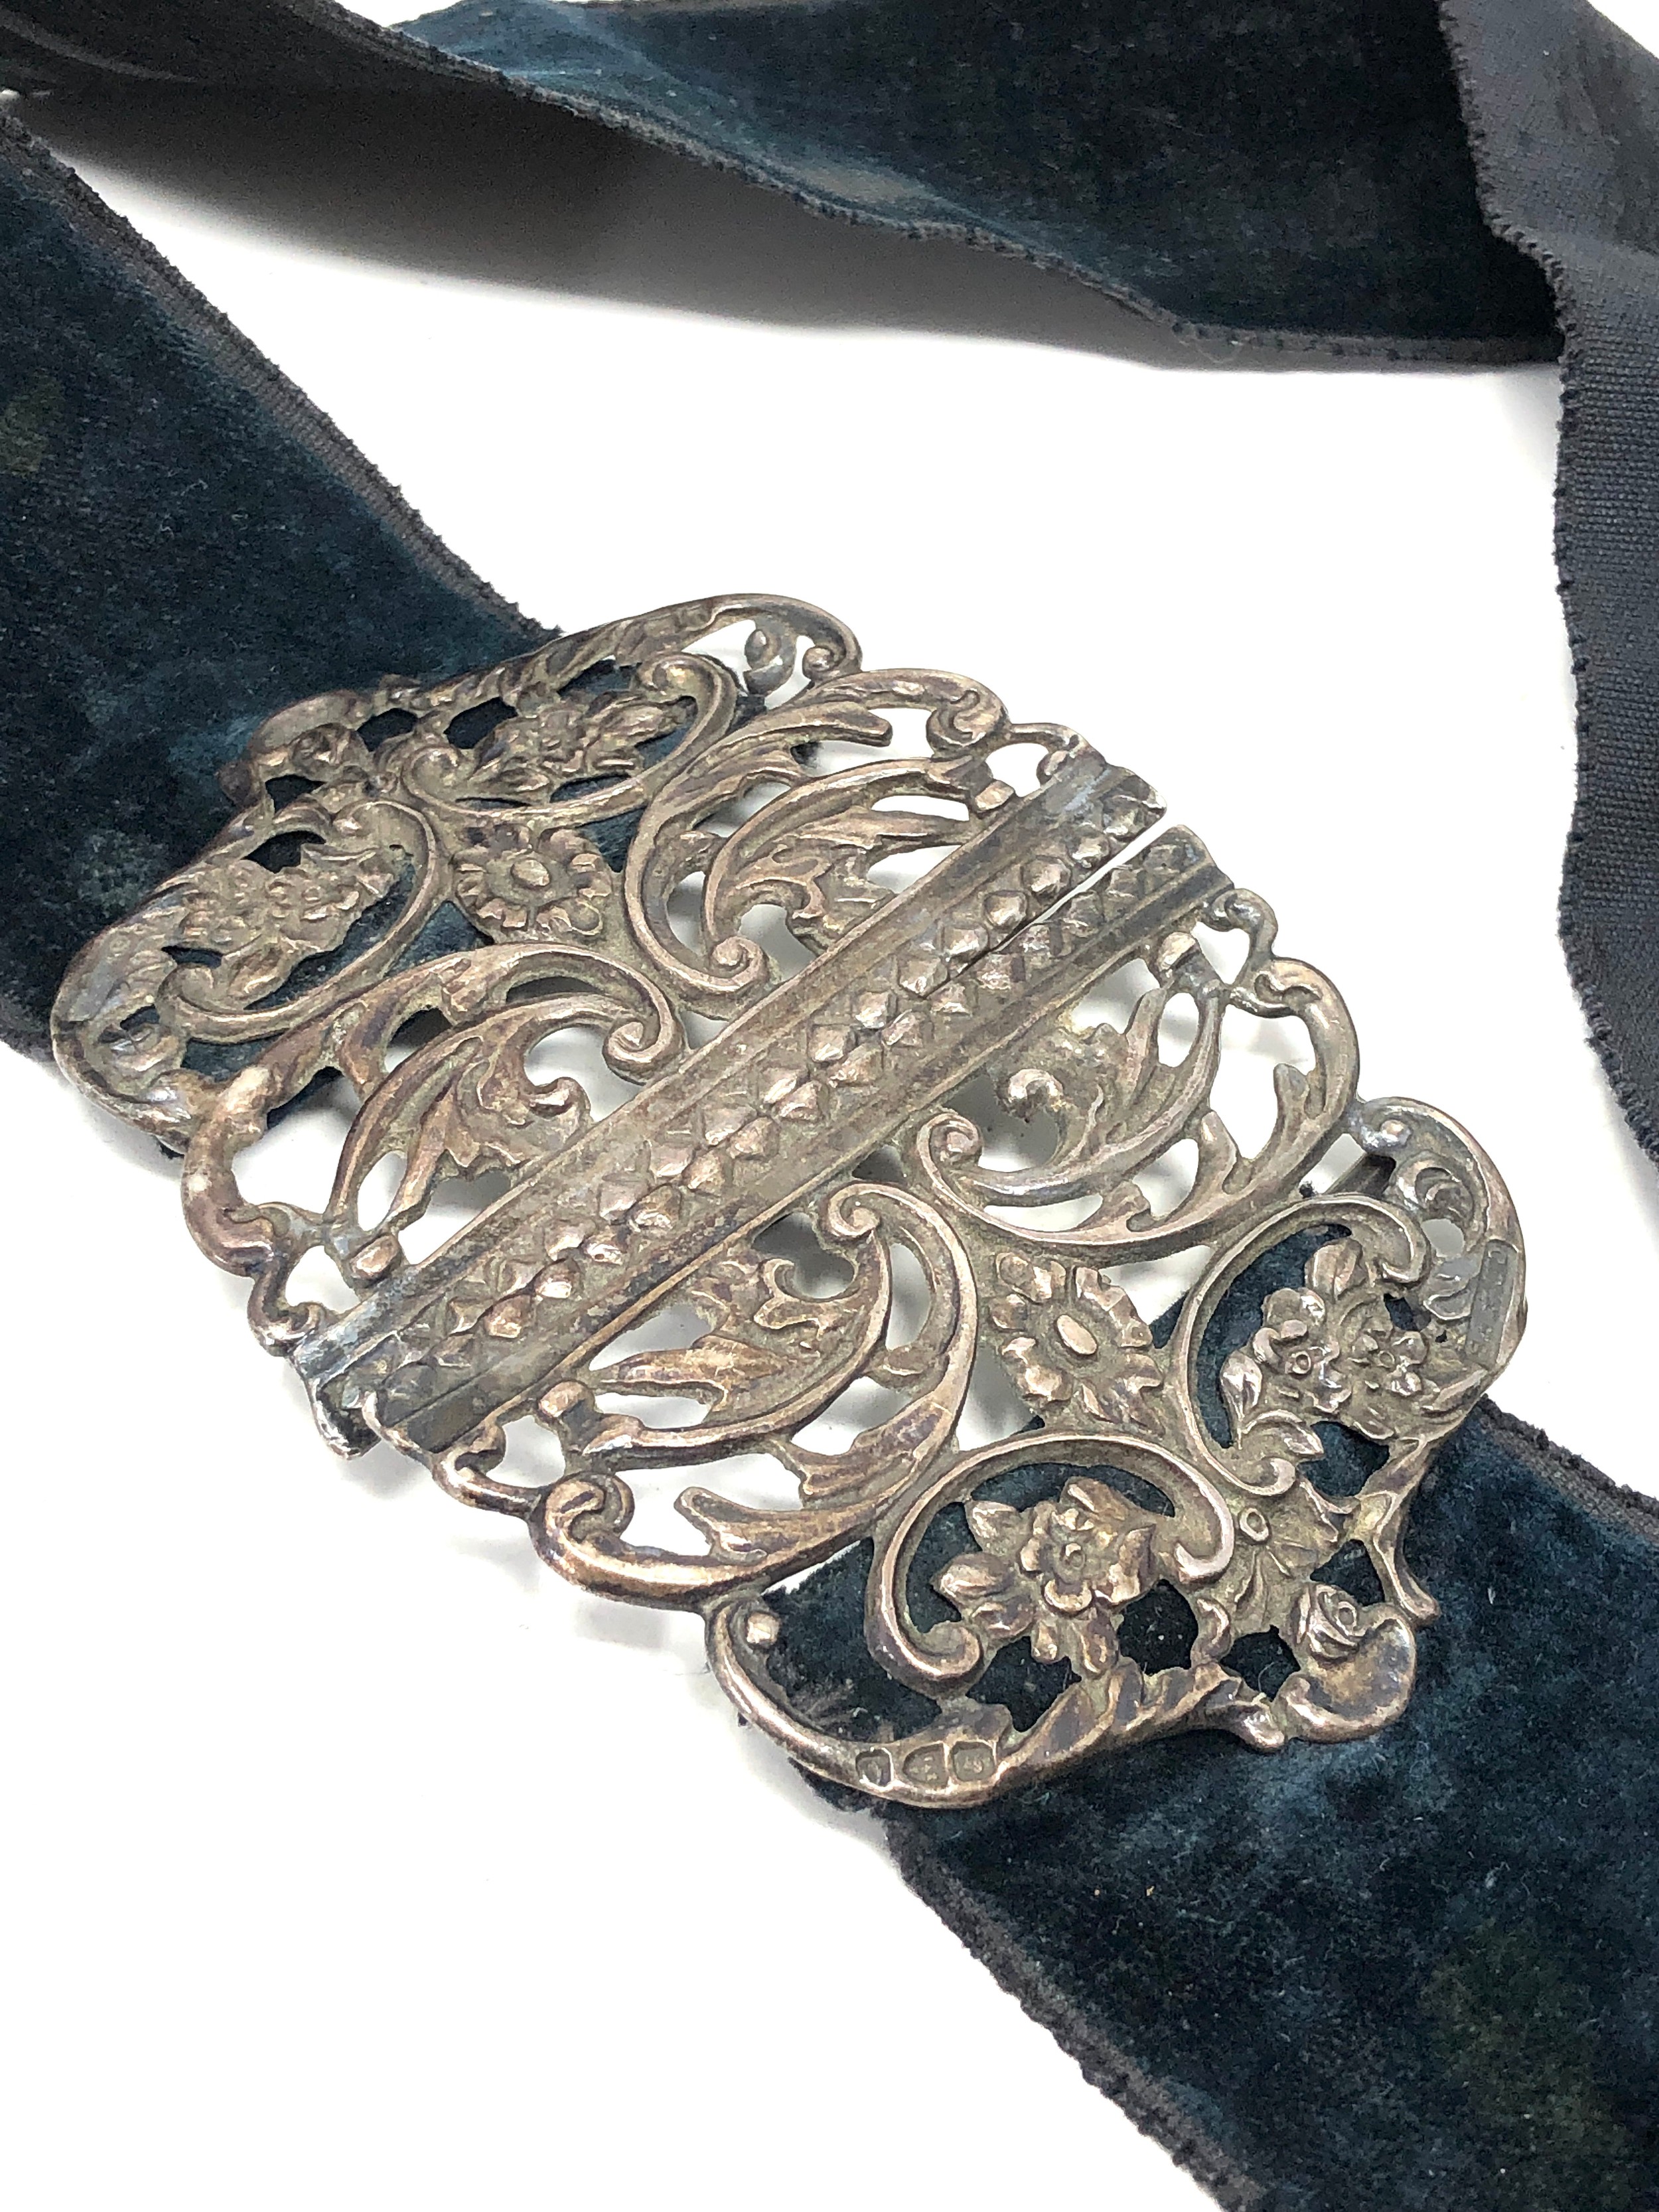 Antique silver nurses buckle chester silver hallmarks - Bild 2 aus 6